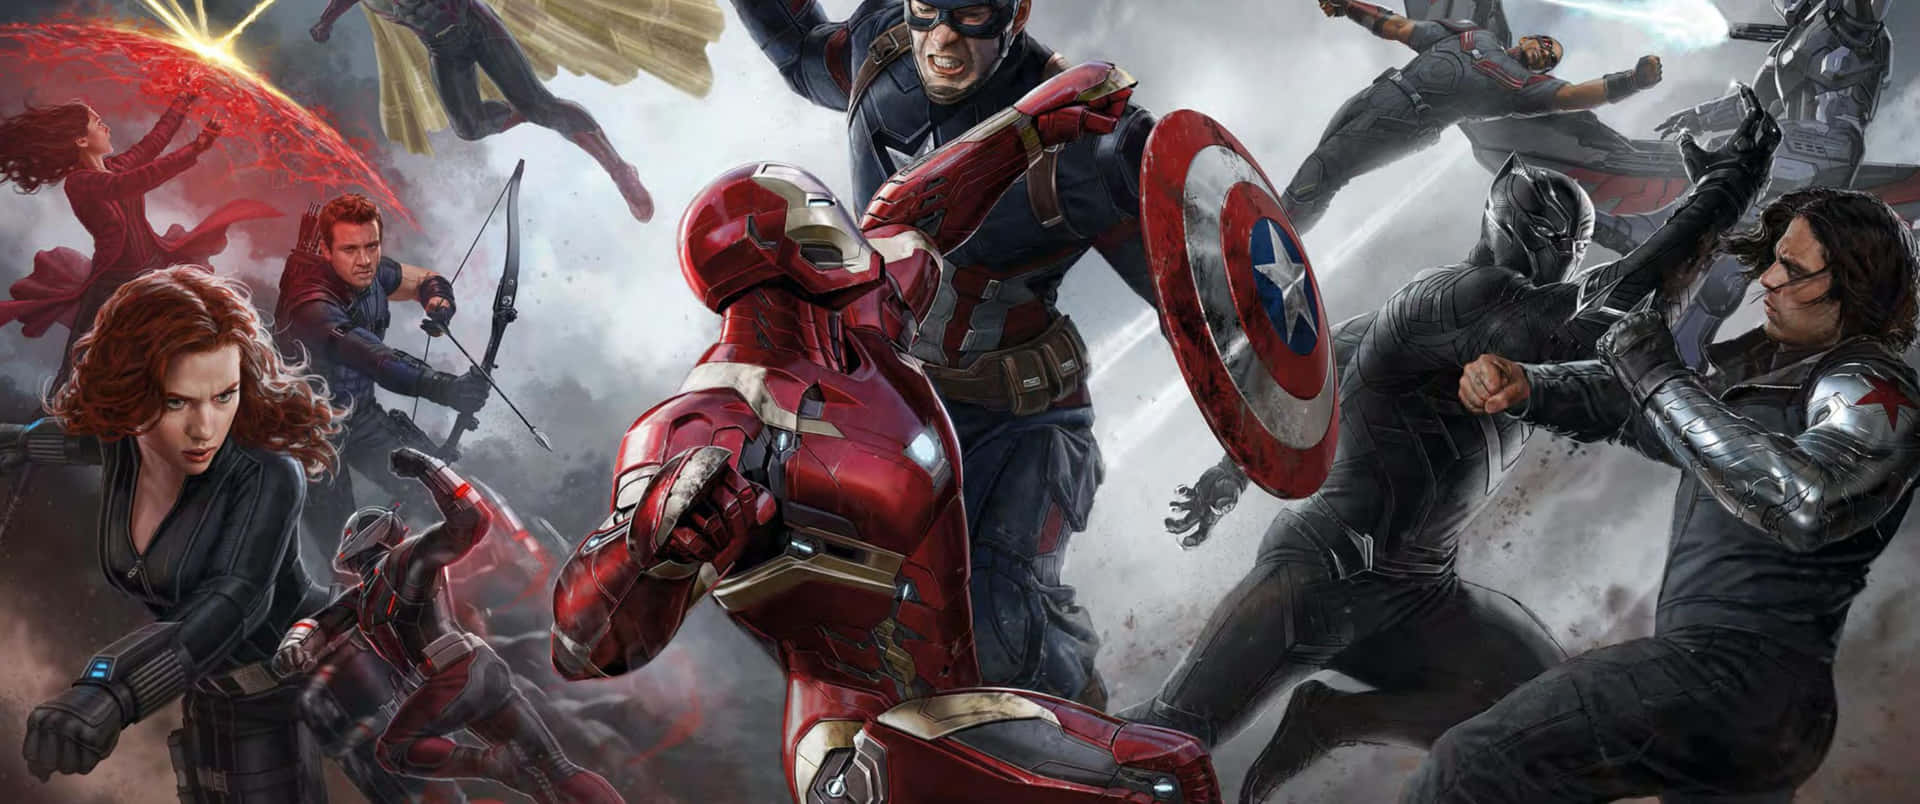 Captain America, a Superhero for All